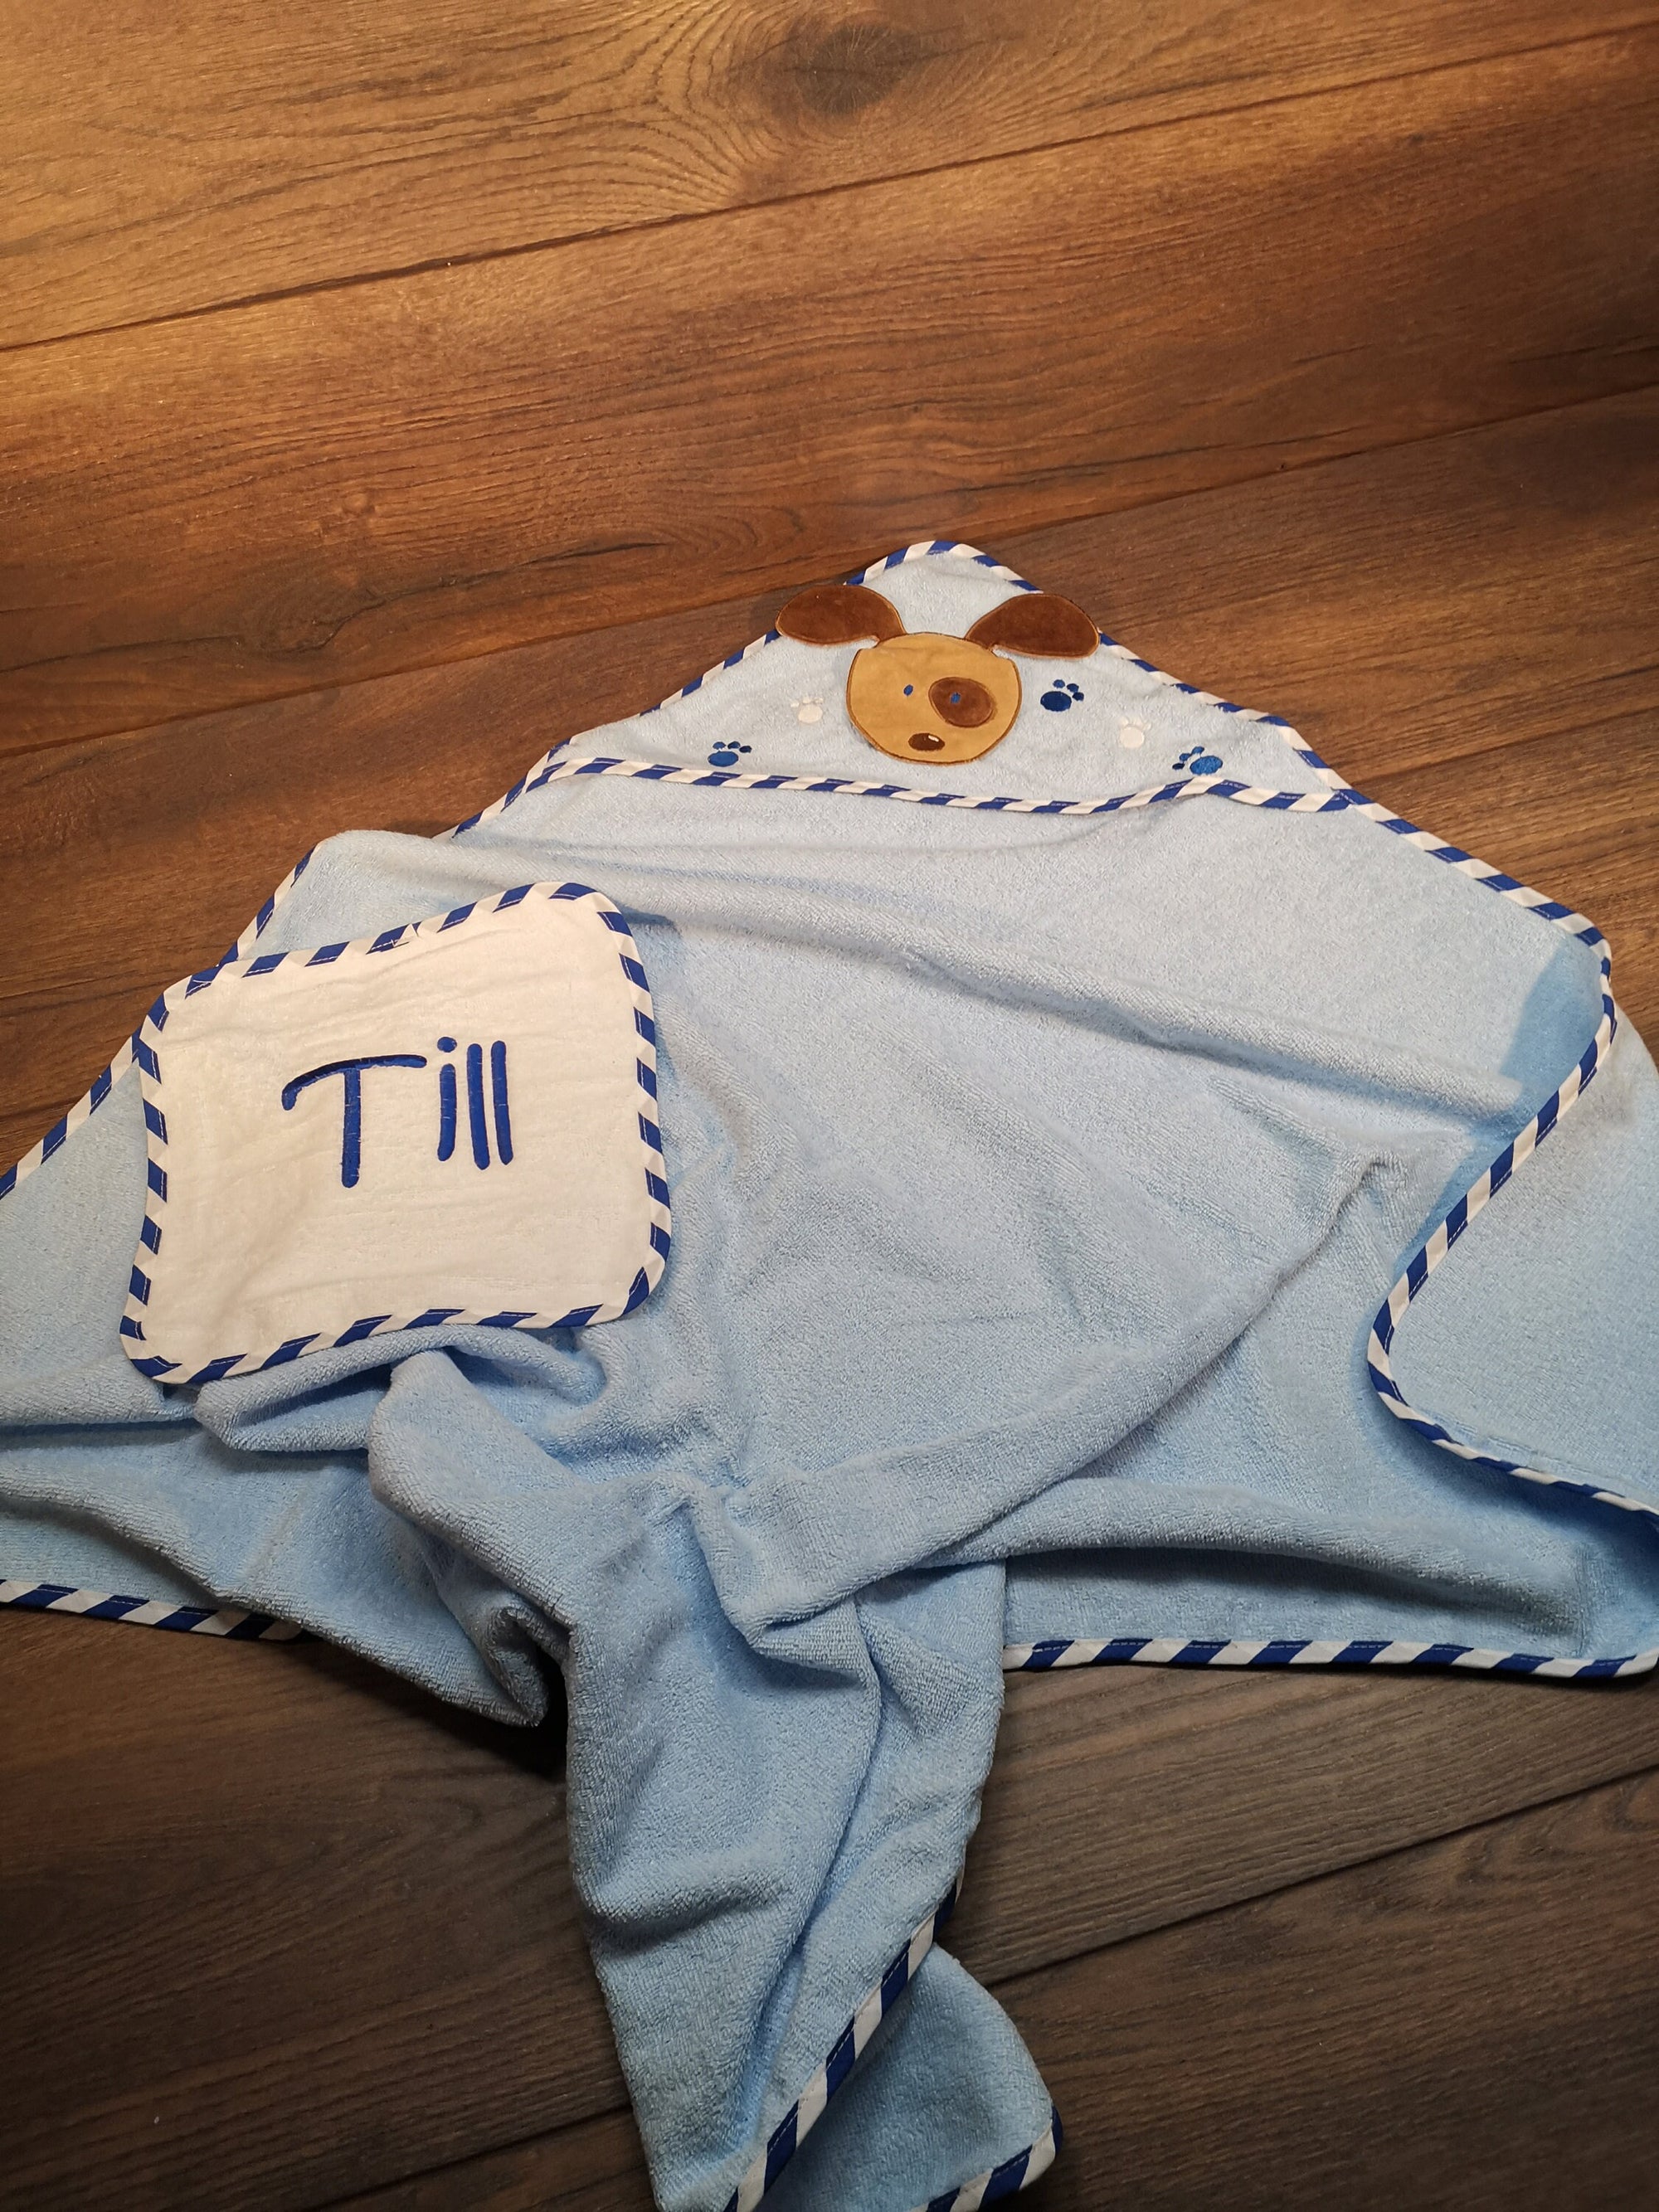 Babyhandtuch mit Namen und Kapuze, Handtuch mit Namen bestickt, Handtuch für Kinder mit Namen